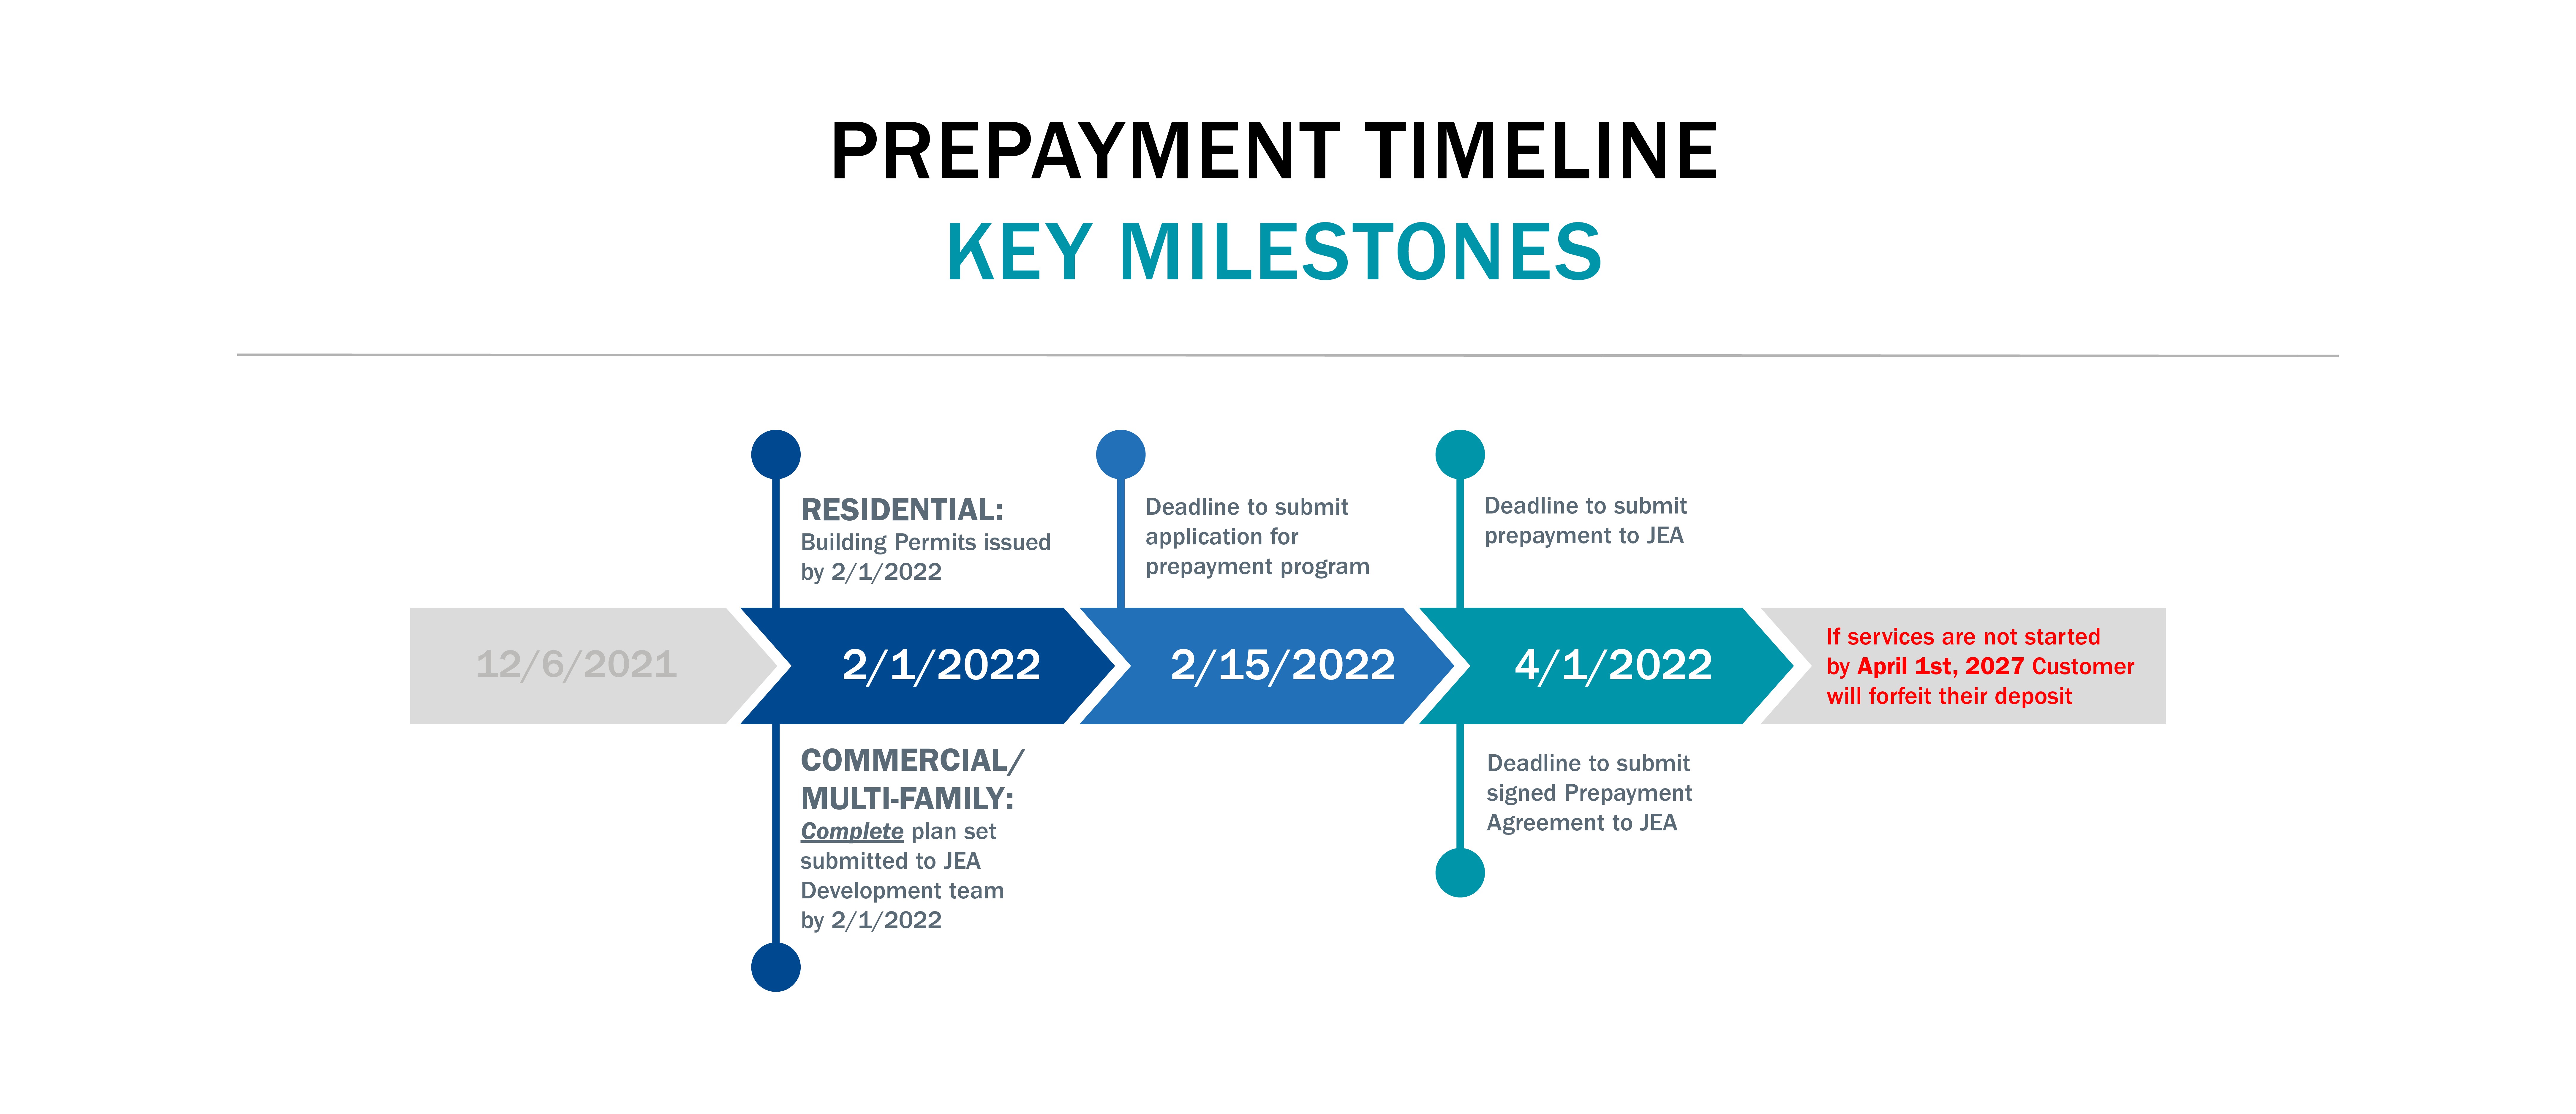 Prepayment Timeline Key Milestones